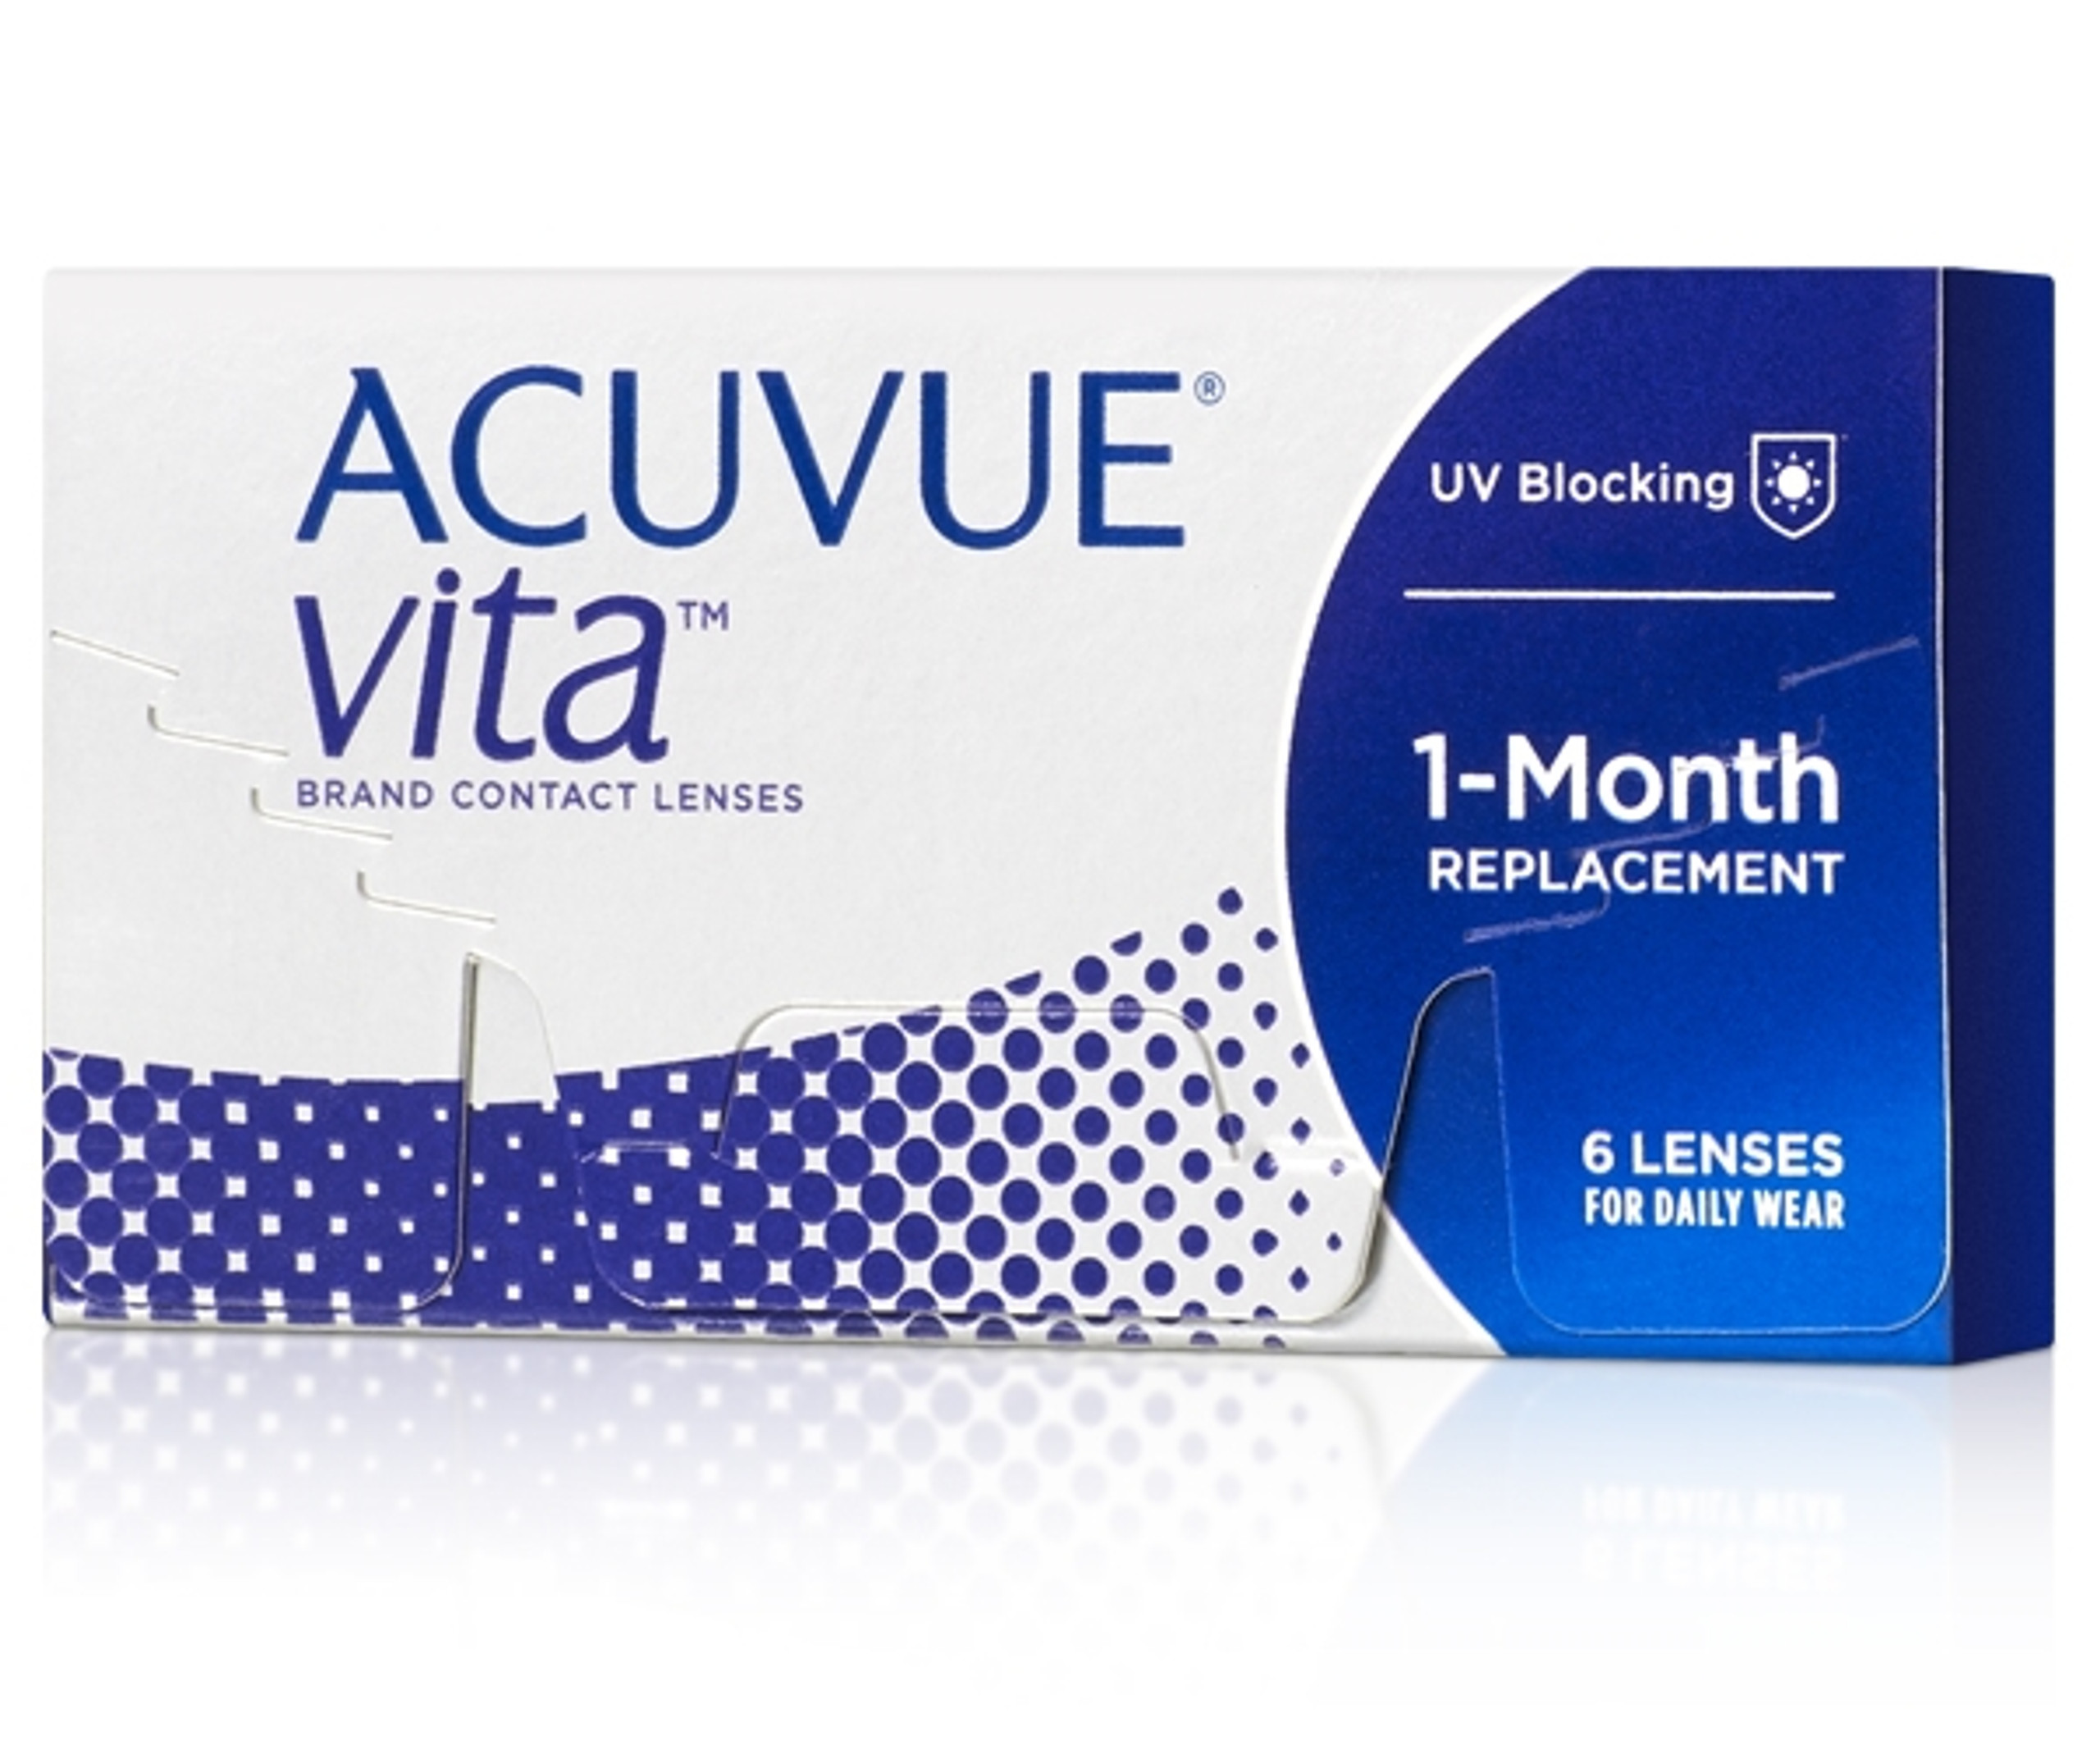 Acuvue Vita Contacts Rebates